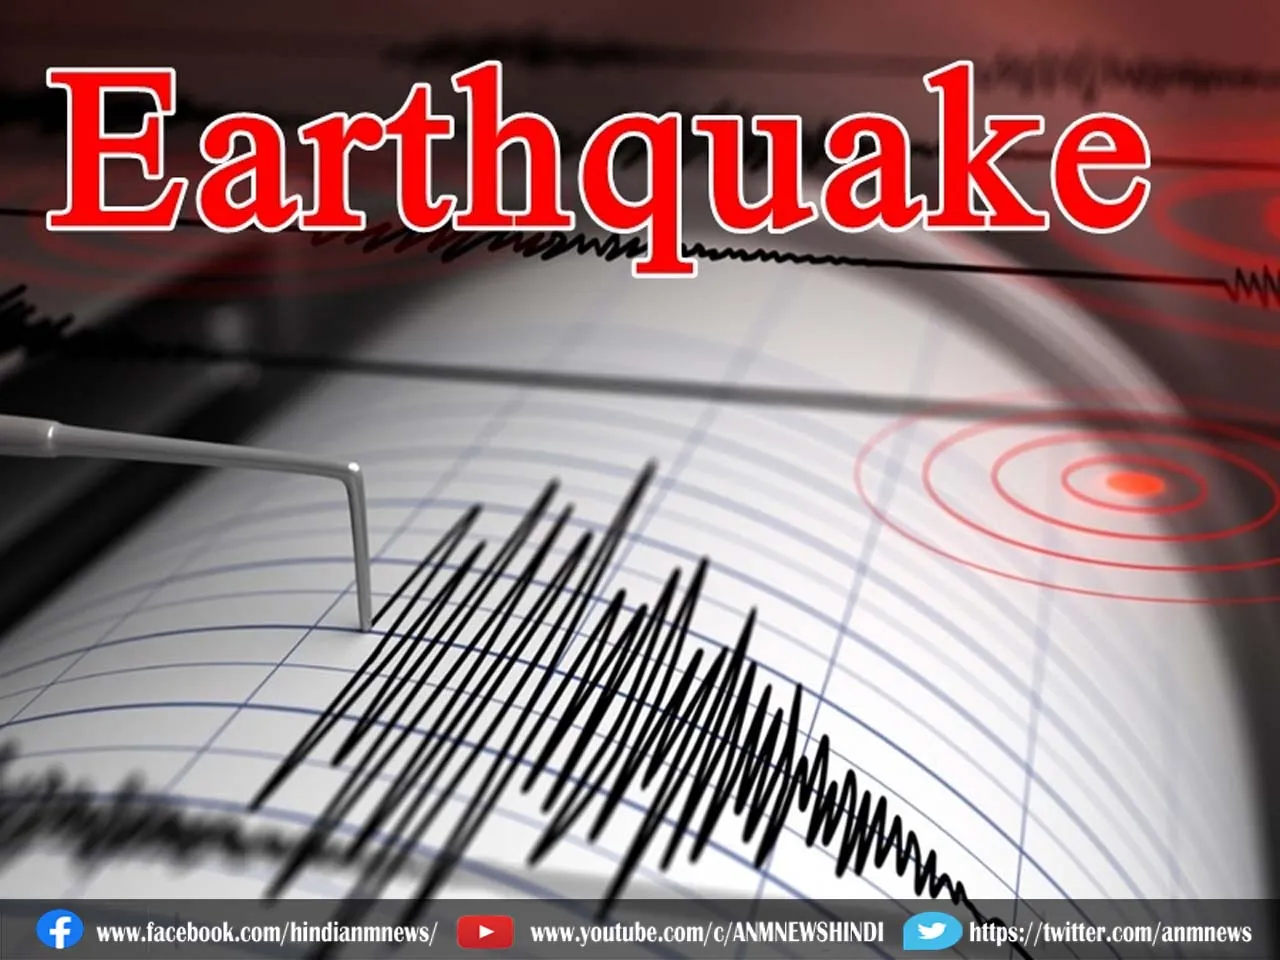 Earthquake : यहां महसूस किए गए 5.3 तीव्रता का भूकंप